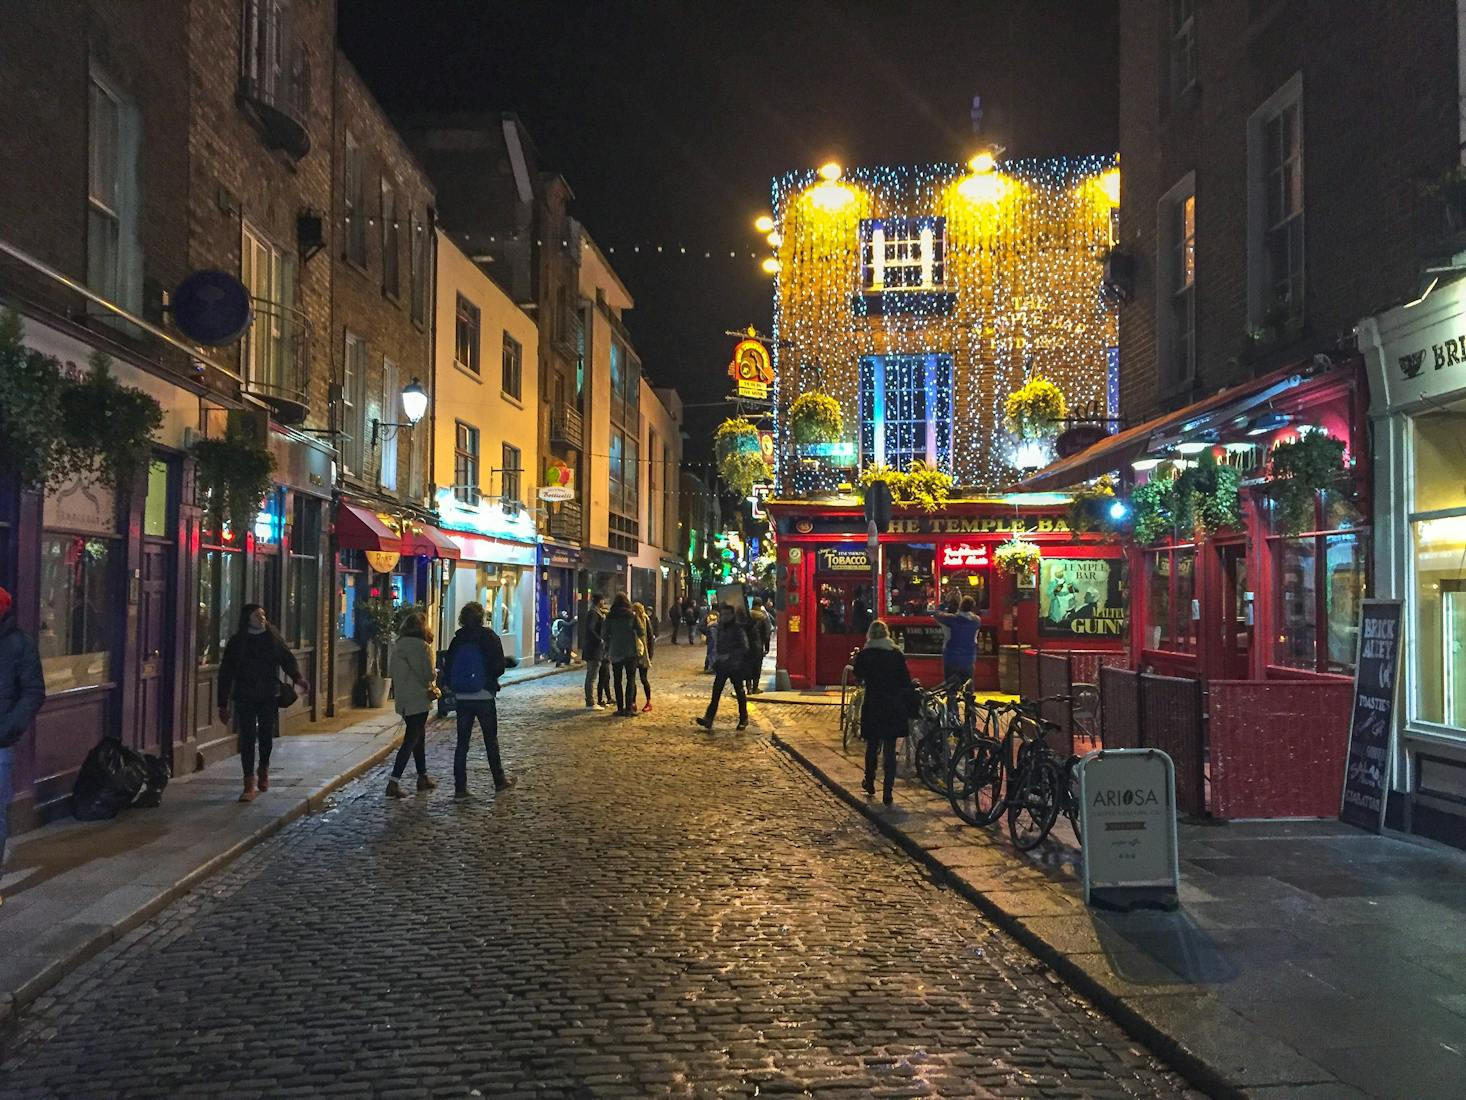 Dublin streets at night